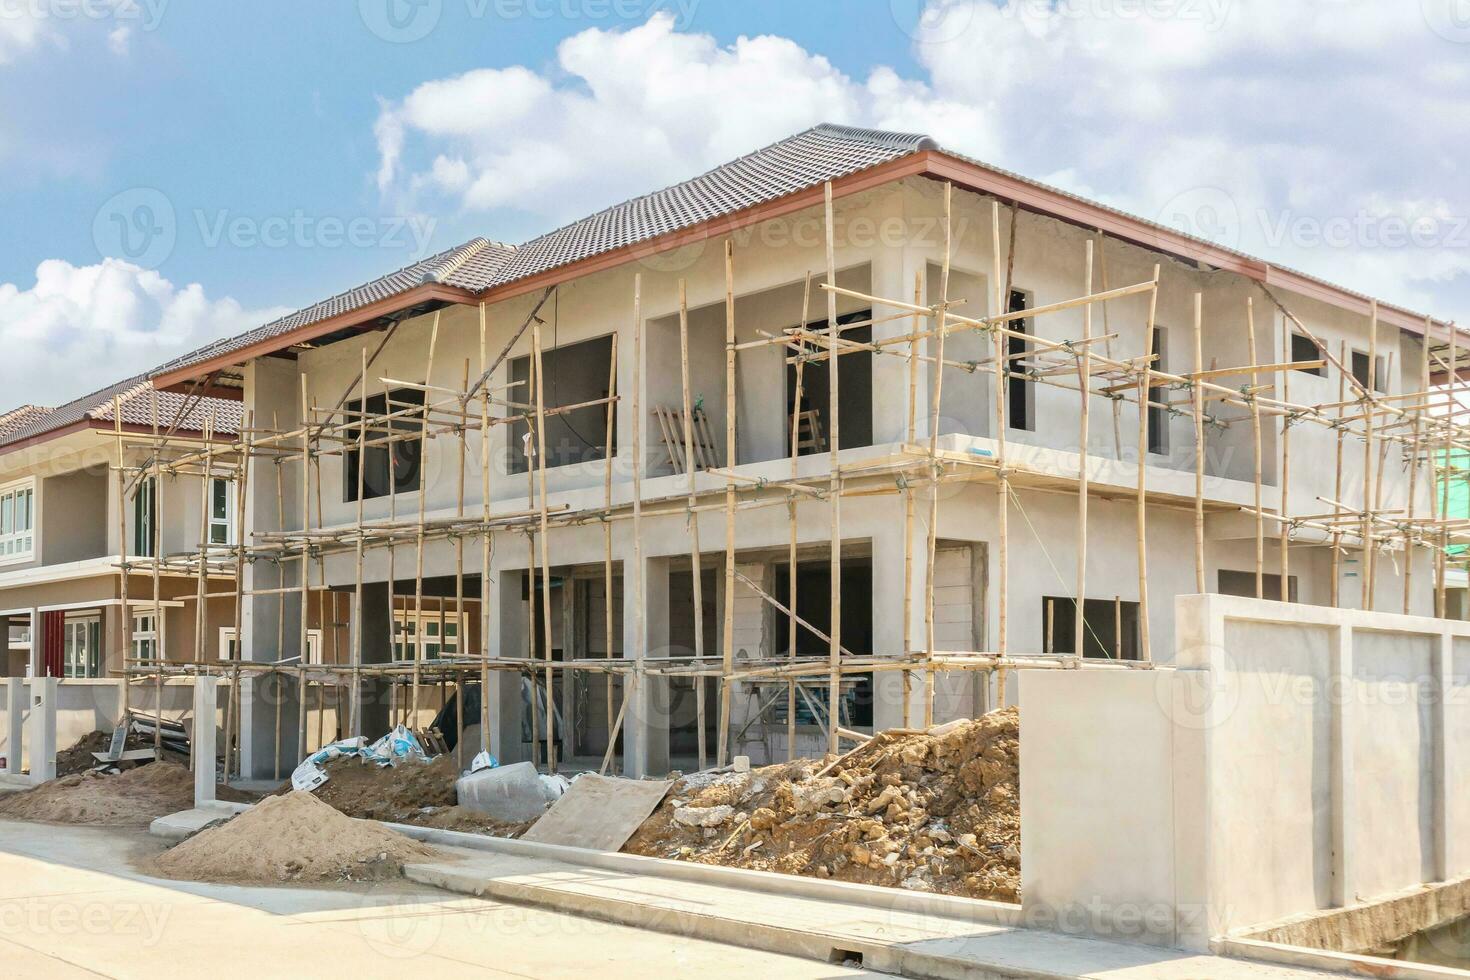 konstruktion bostads- ny hus i framsteg på byggnad webbplats hus egendom utveckling foto